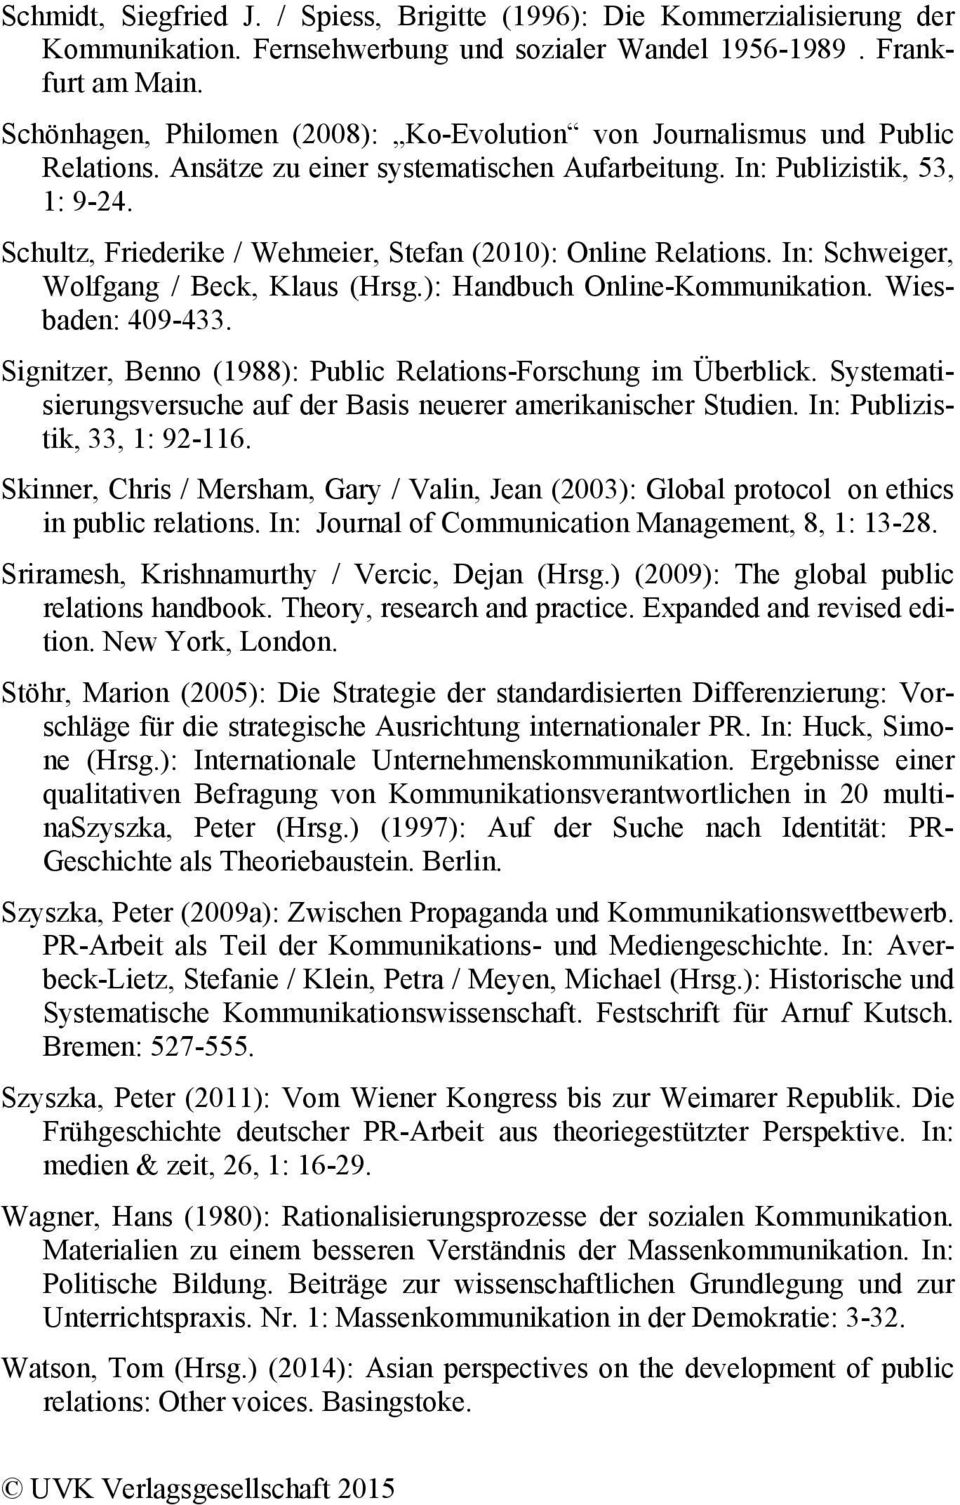 Schultz, Friederike / Wehmeier, Stefan (2010): Online Relations. In: Schweiger, Wolfgang / Beck, Klaus (Hrsg.): Handbuch Online-Kommunikation. Wiesbaden: 409-433.